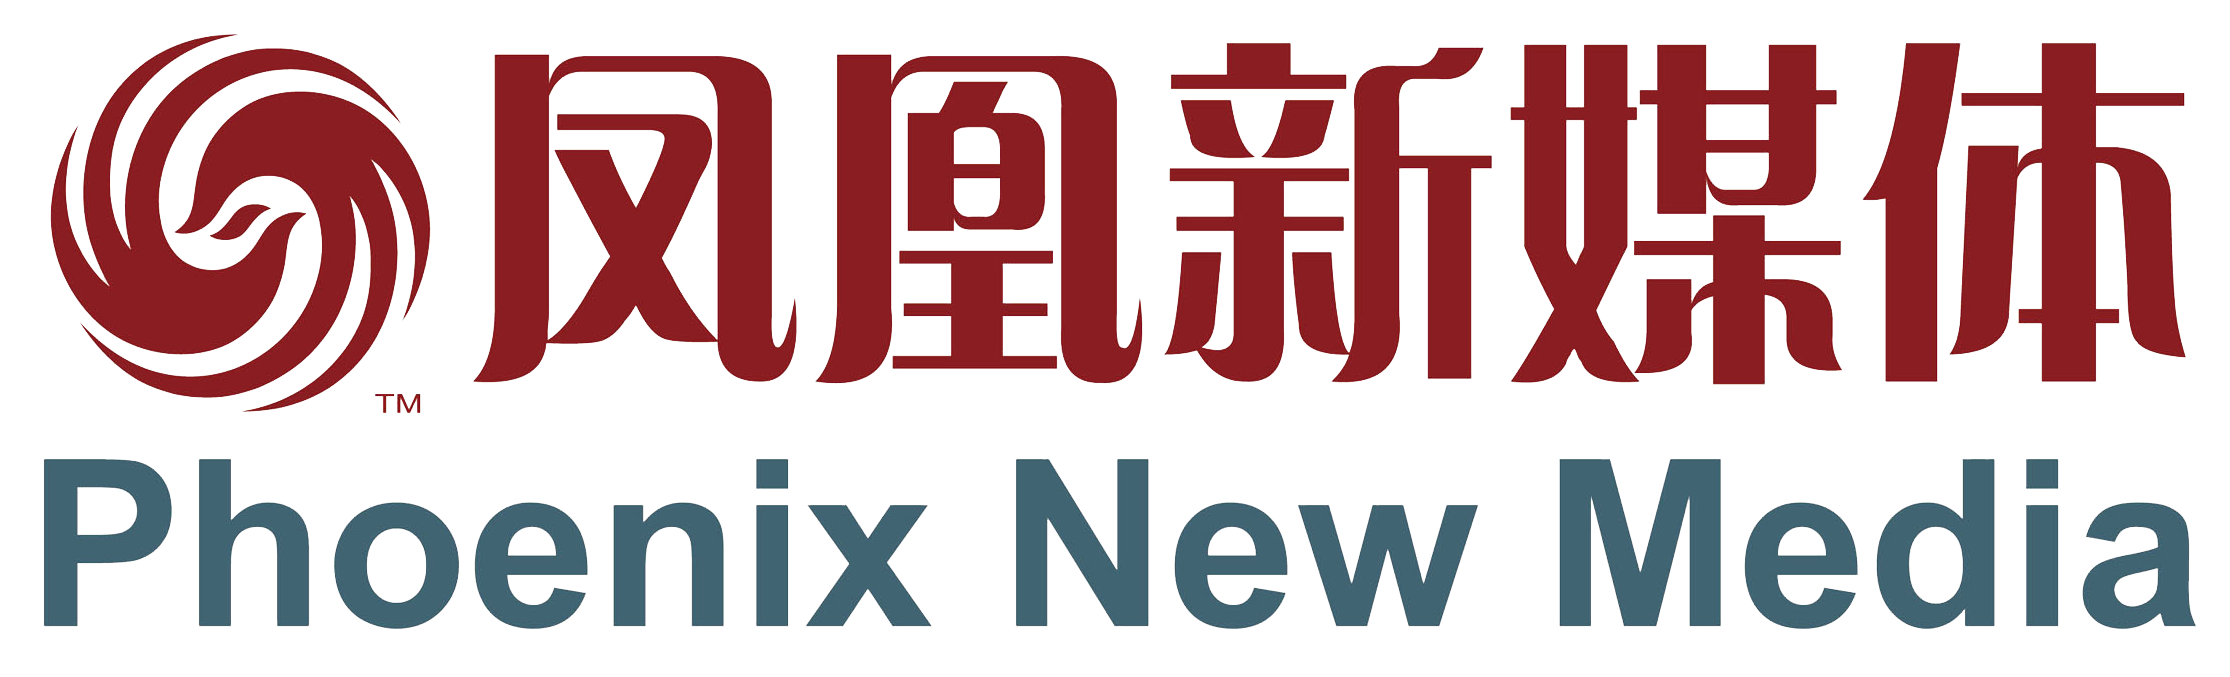 Phoenix New Media Ltd